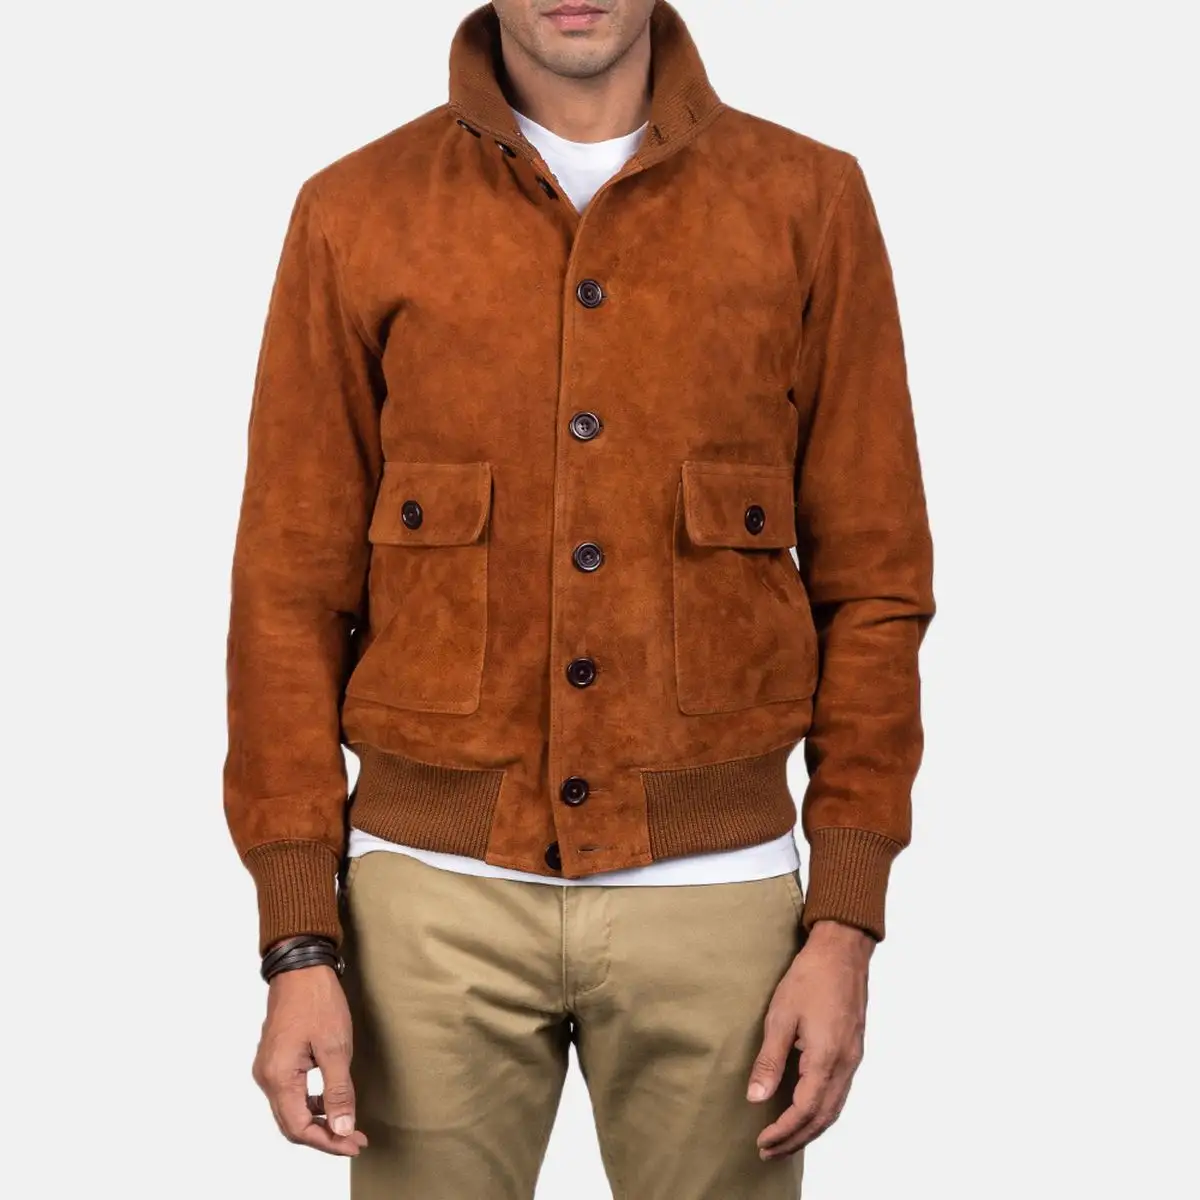 Ombrer-chaqueta de cuero auténtico con 2 bolsillos delanteros para hombre, chaqueta con cuello levantado y diseño atractivo, color marrón